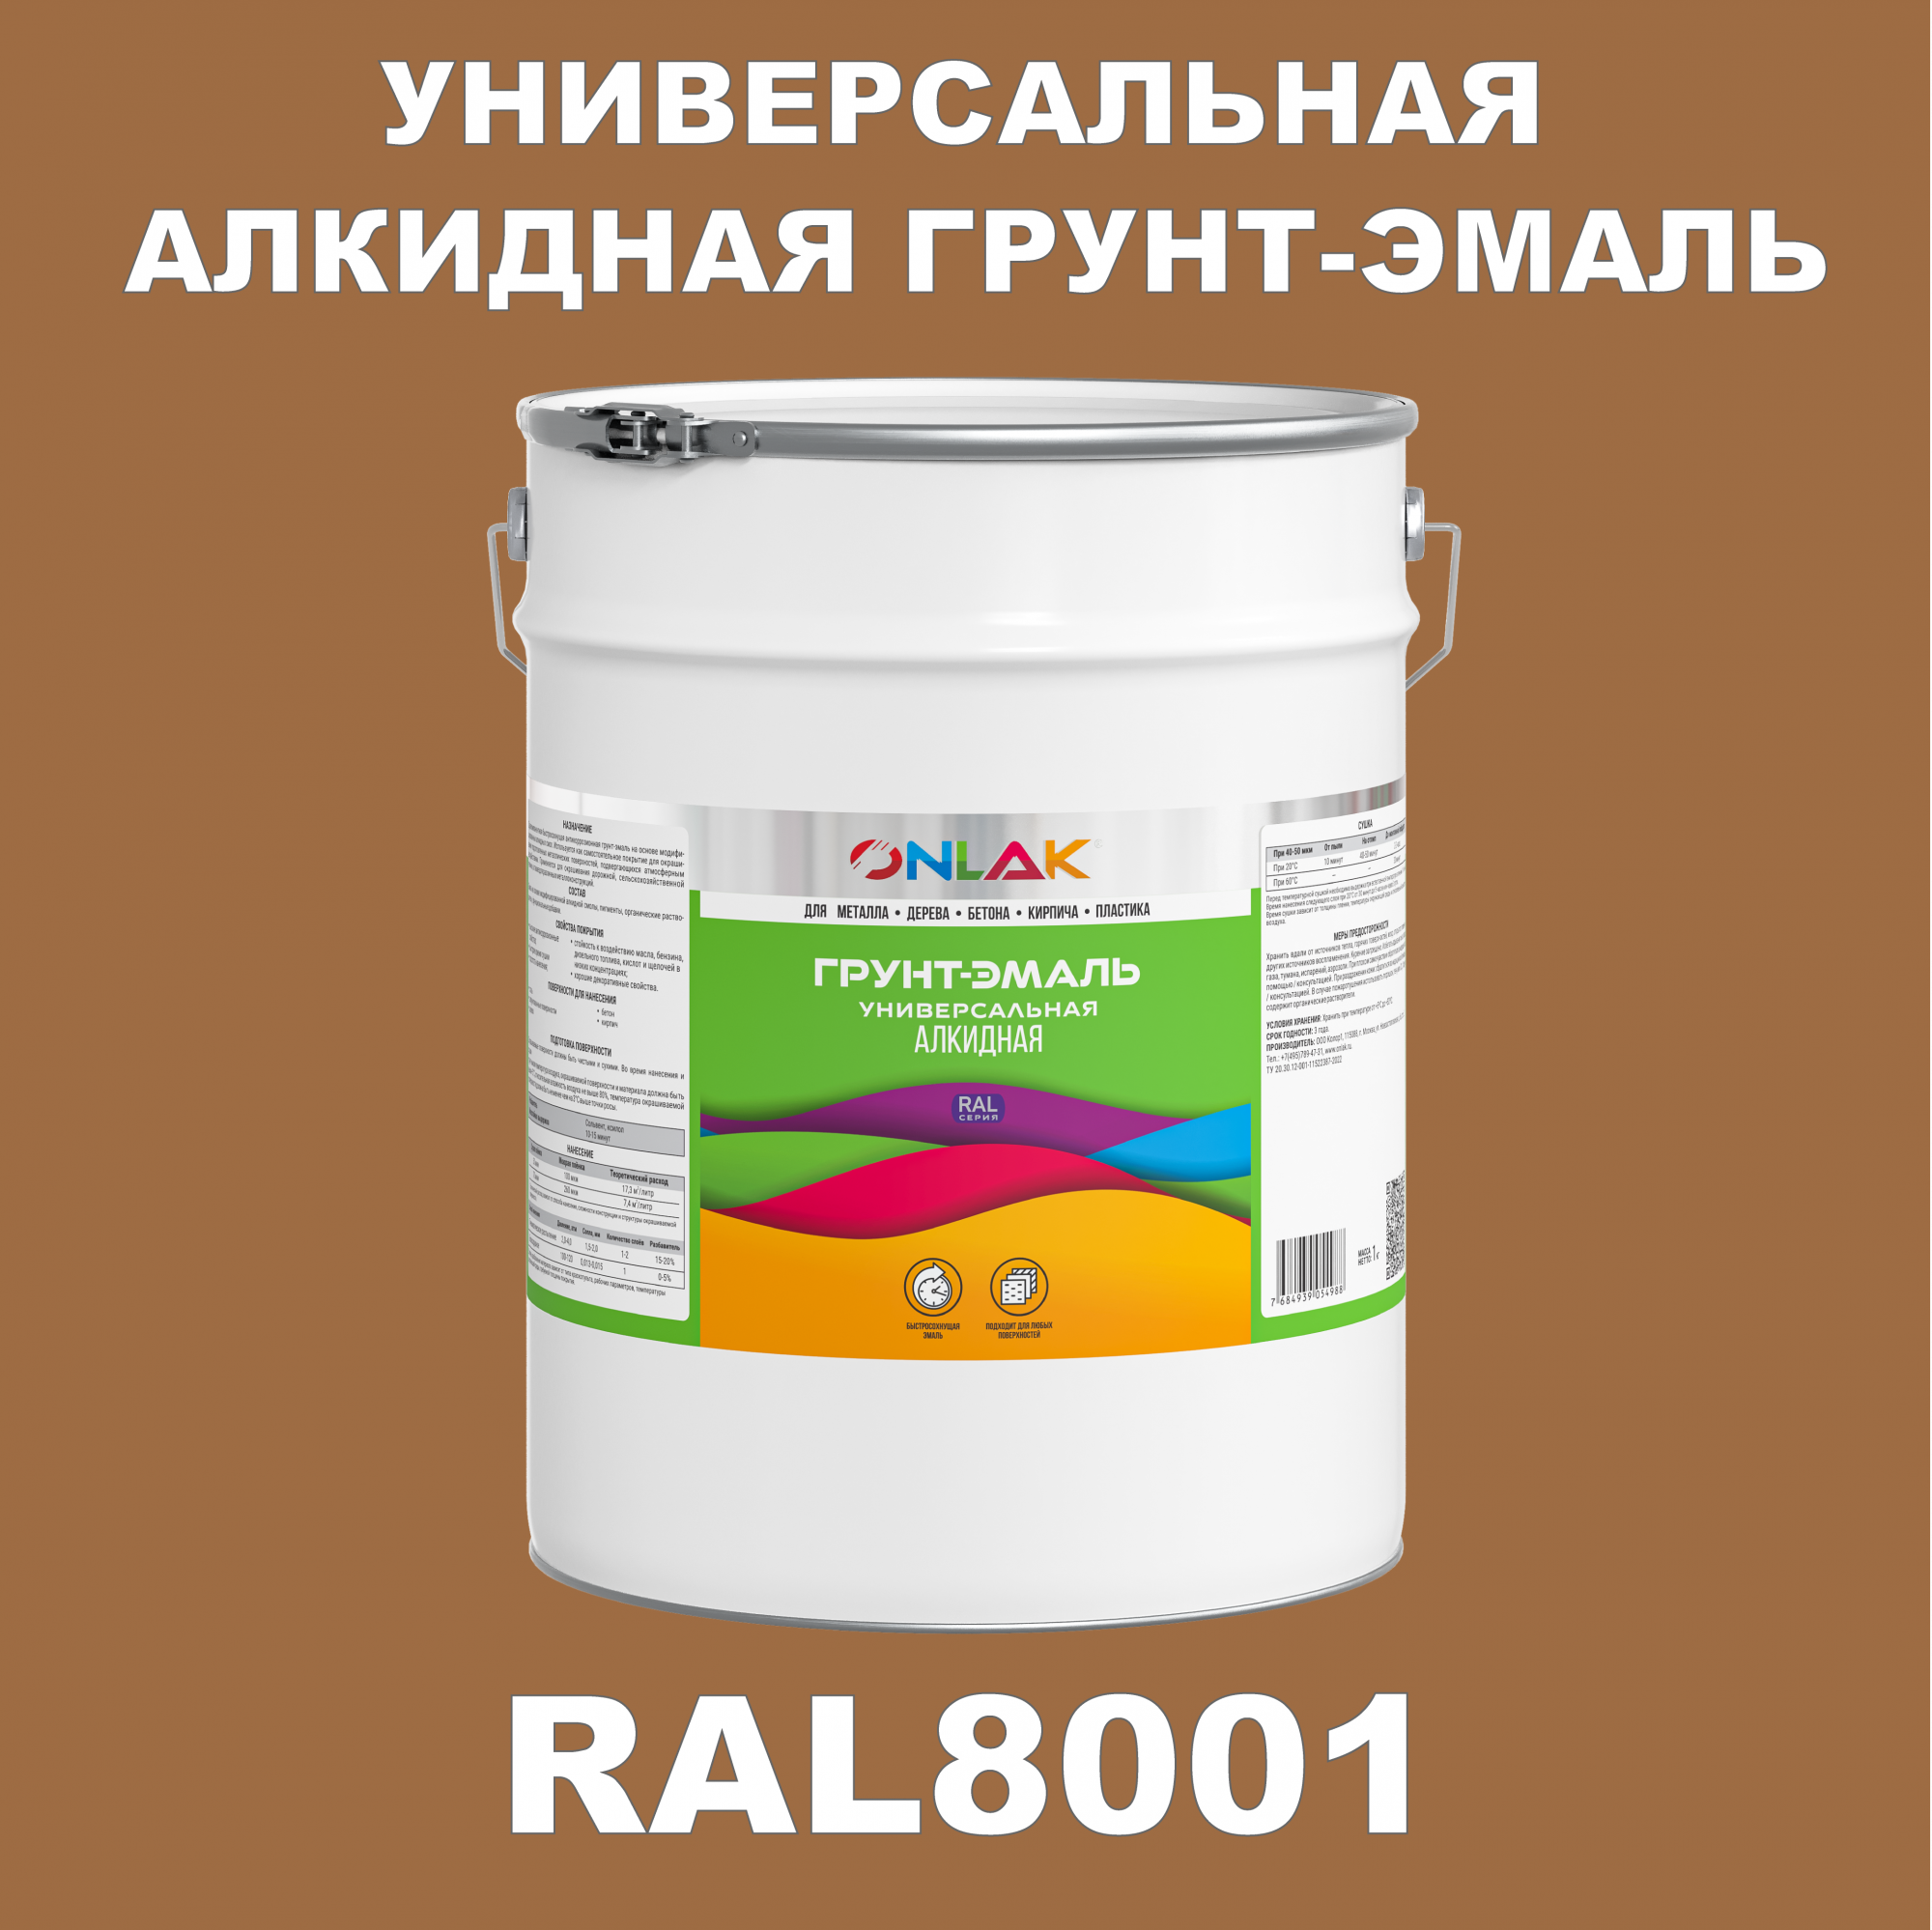 Грунт-эмаль ONLAK 1К RAL8001 антикоррозионная алкидная по металлу по ржавчине 20 кг грунт для масла mighty oak